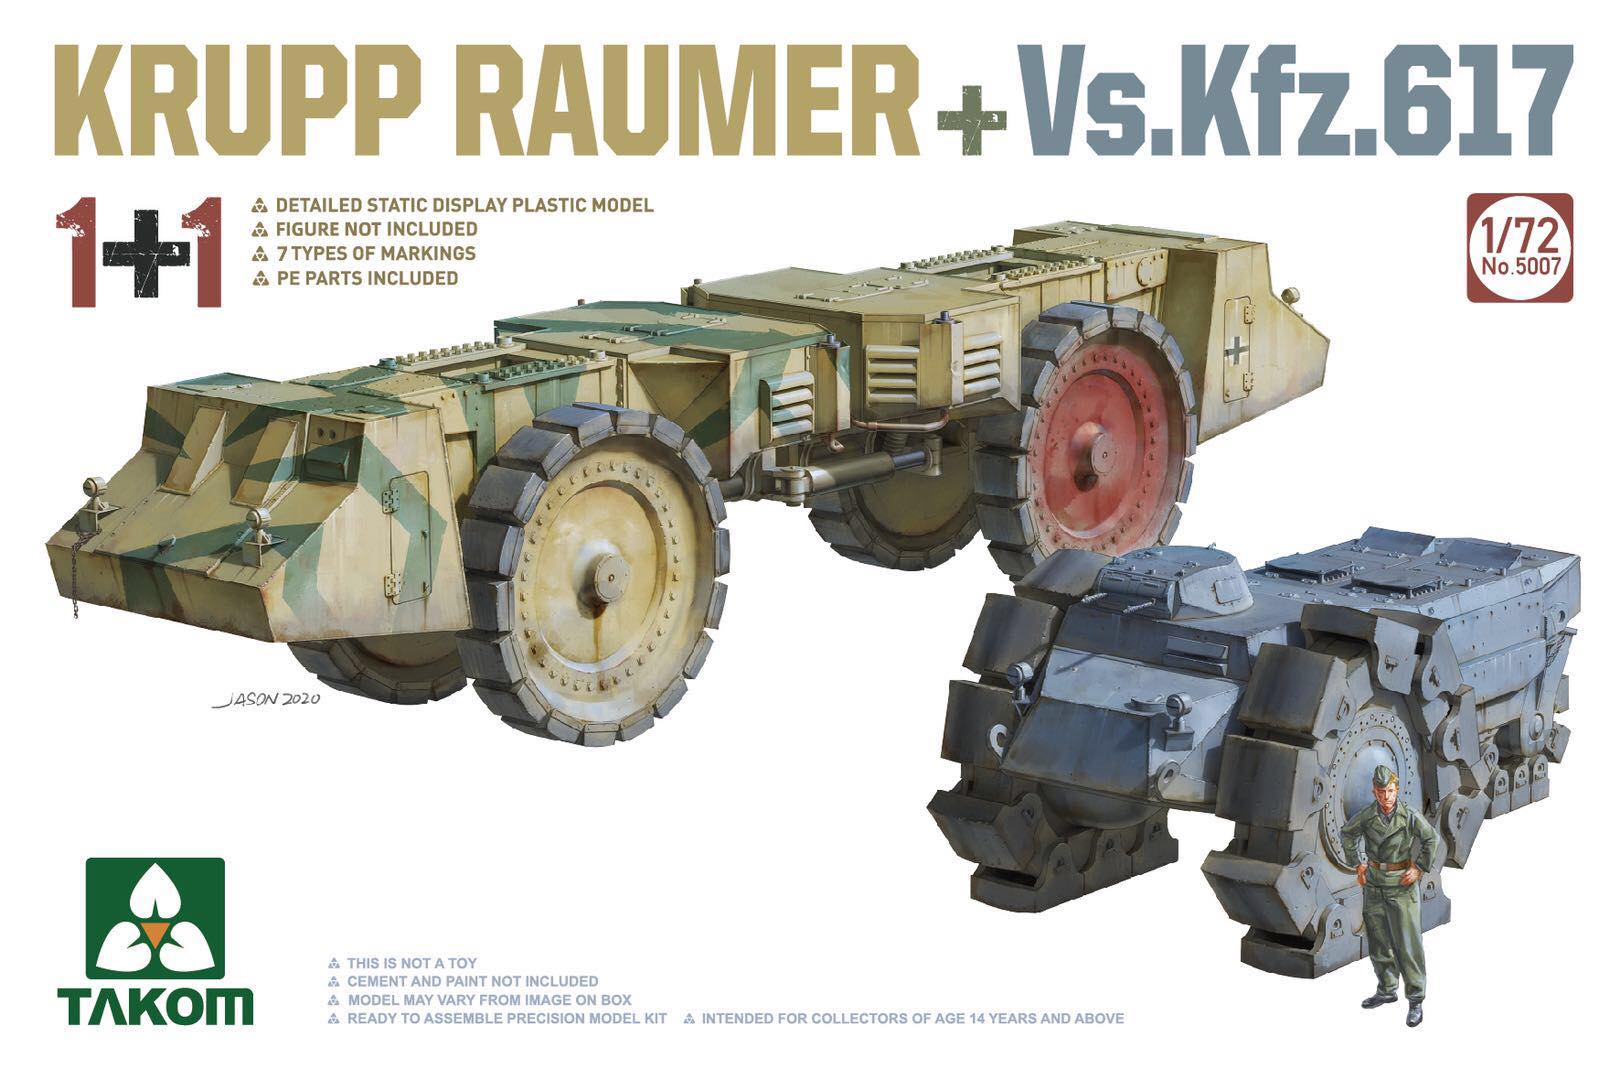 Krupp Raumer & Vs.Kfz.617